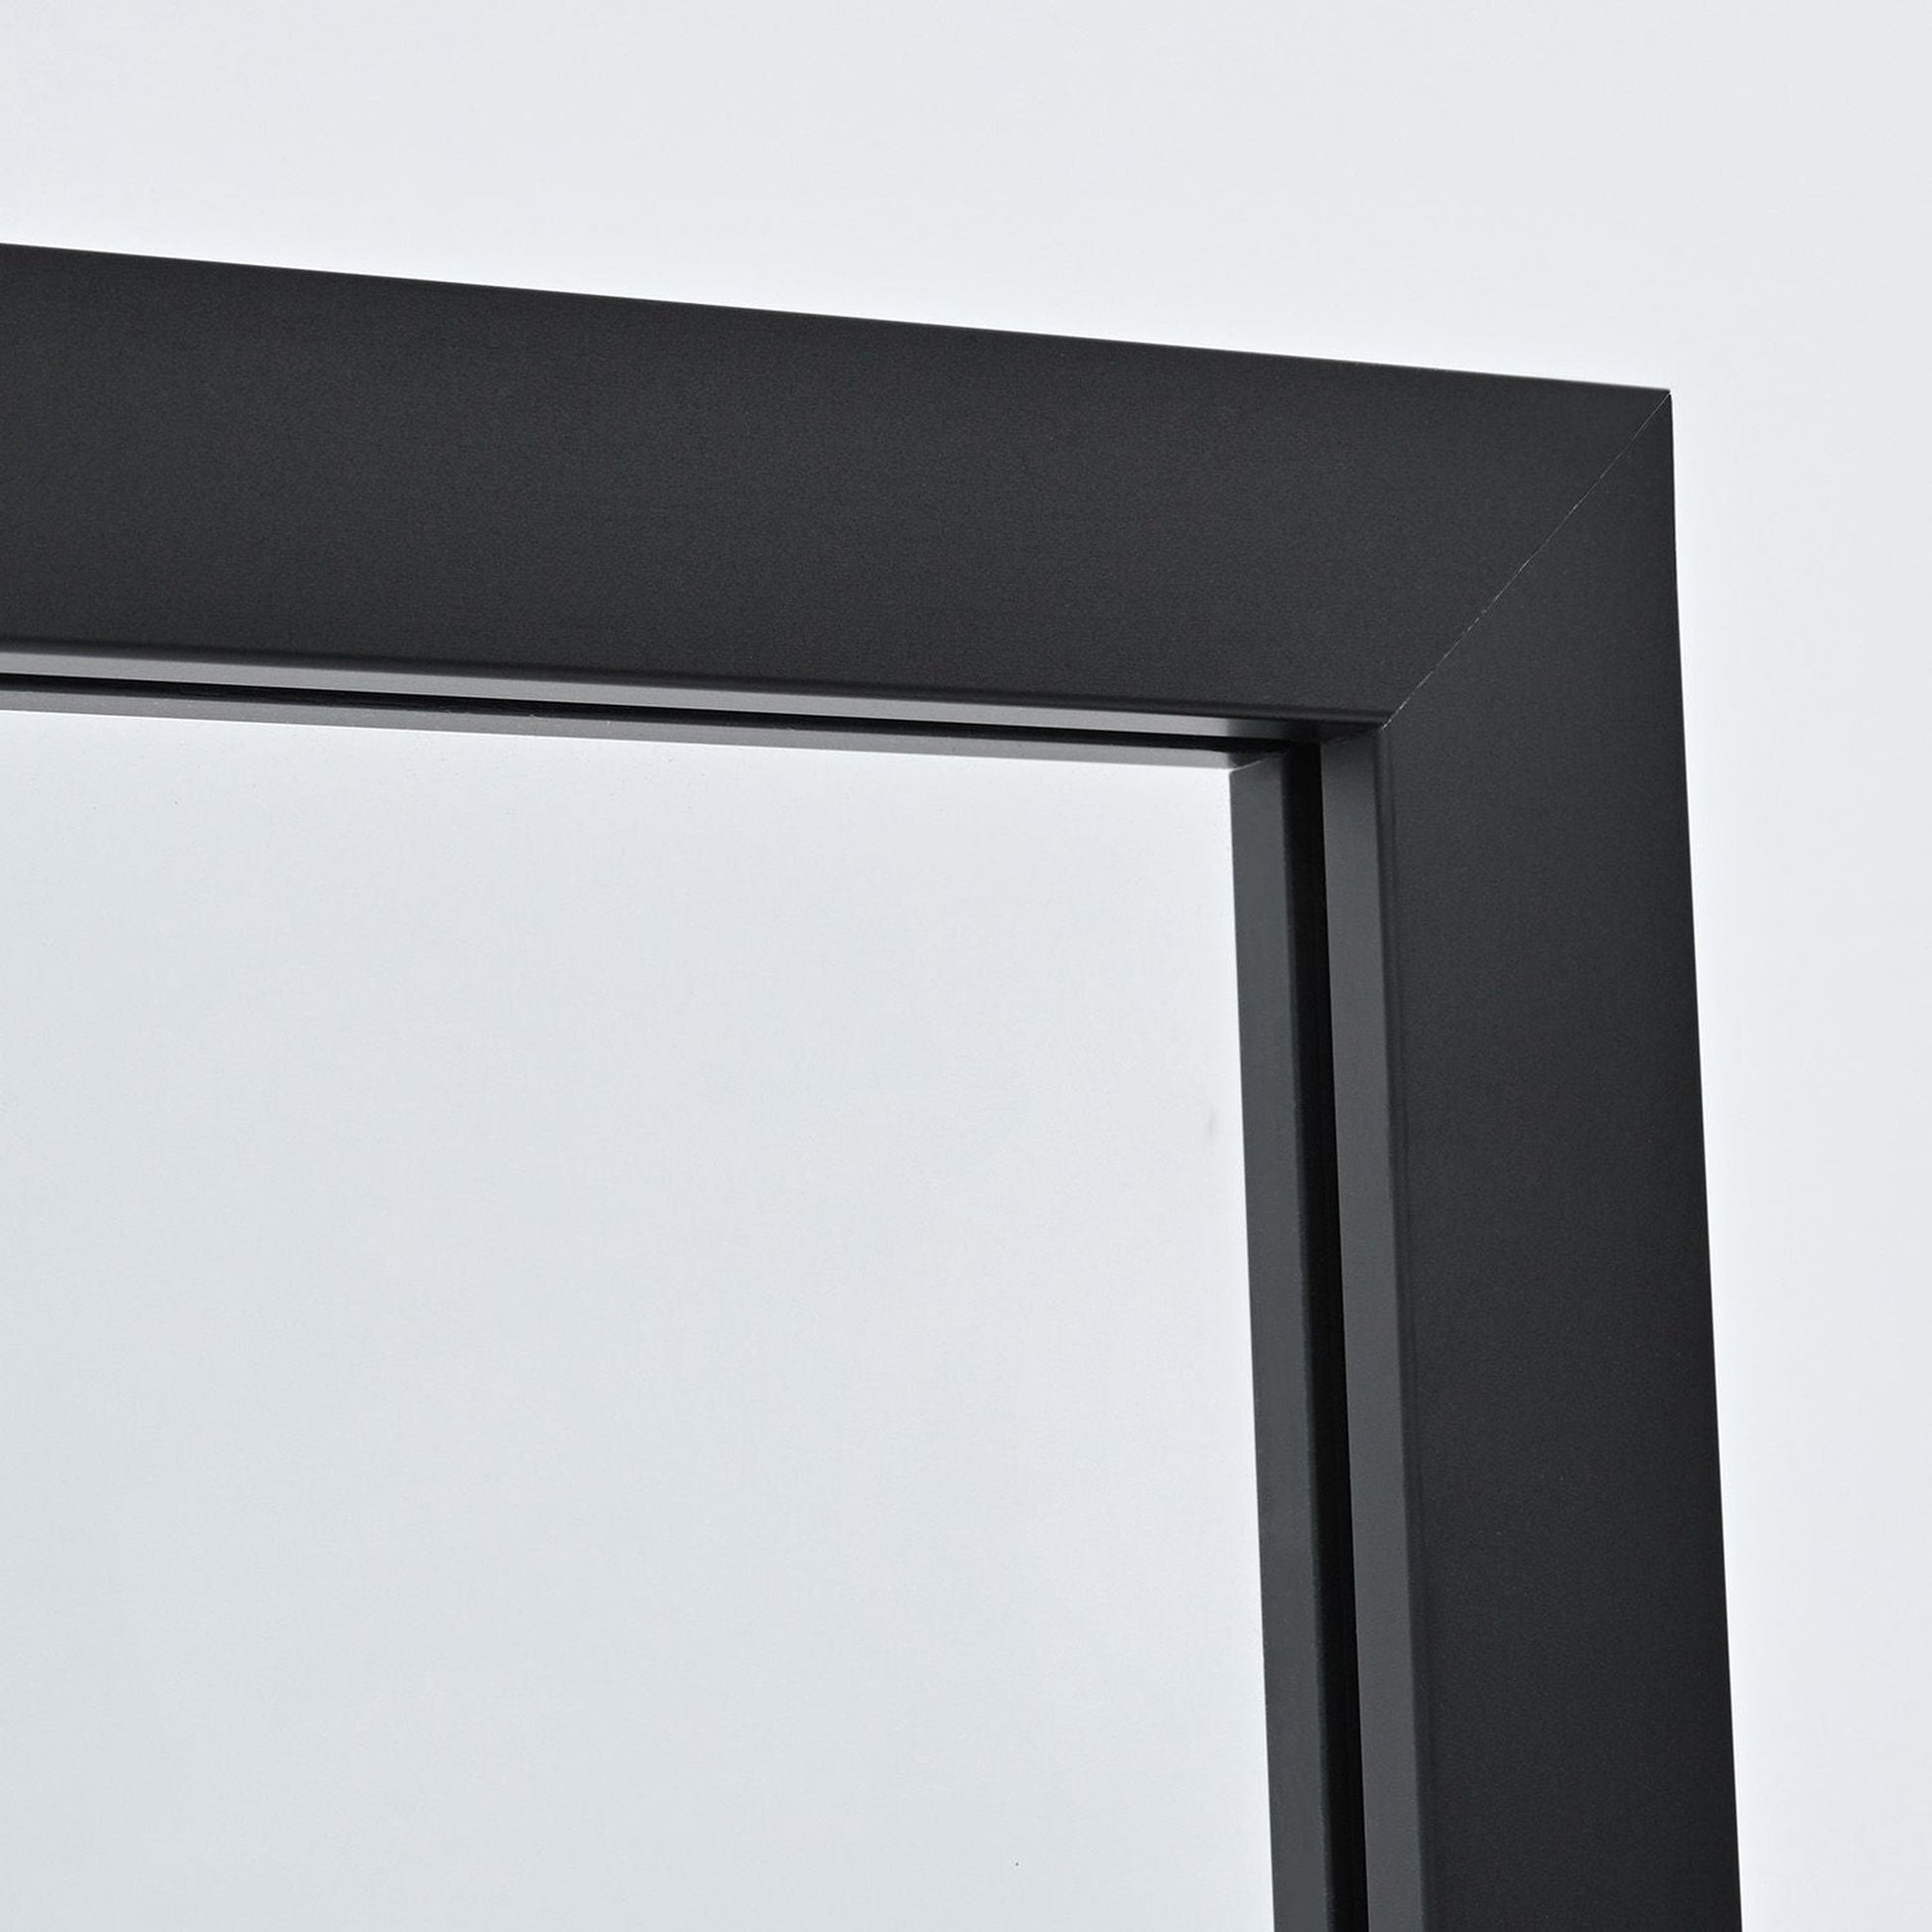 Vinnova Puerto 34" x 74" Framed Fixed Glass Panel in Matte Black Finish